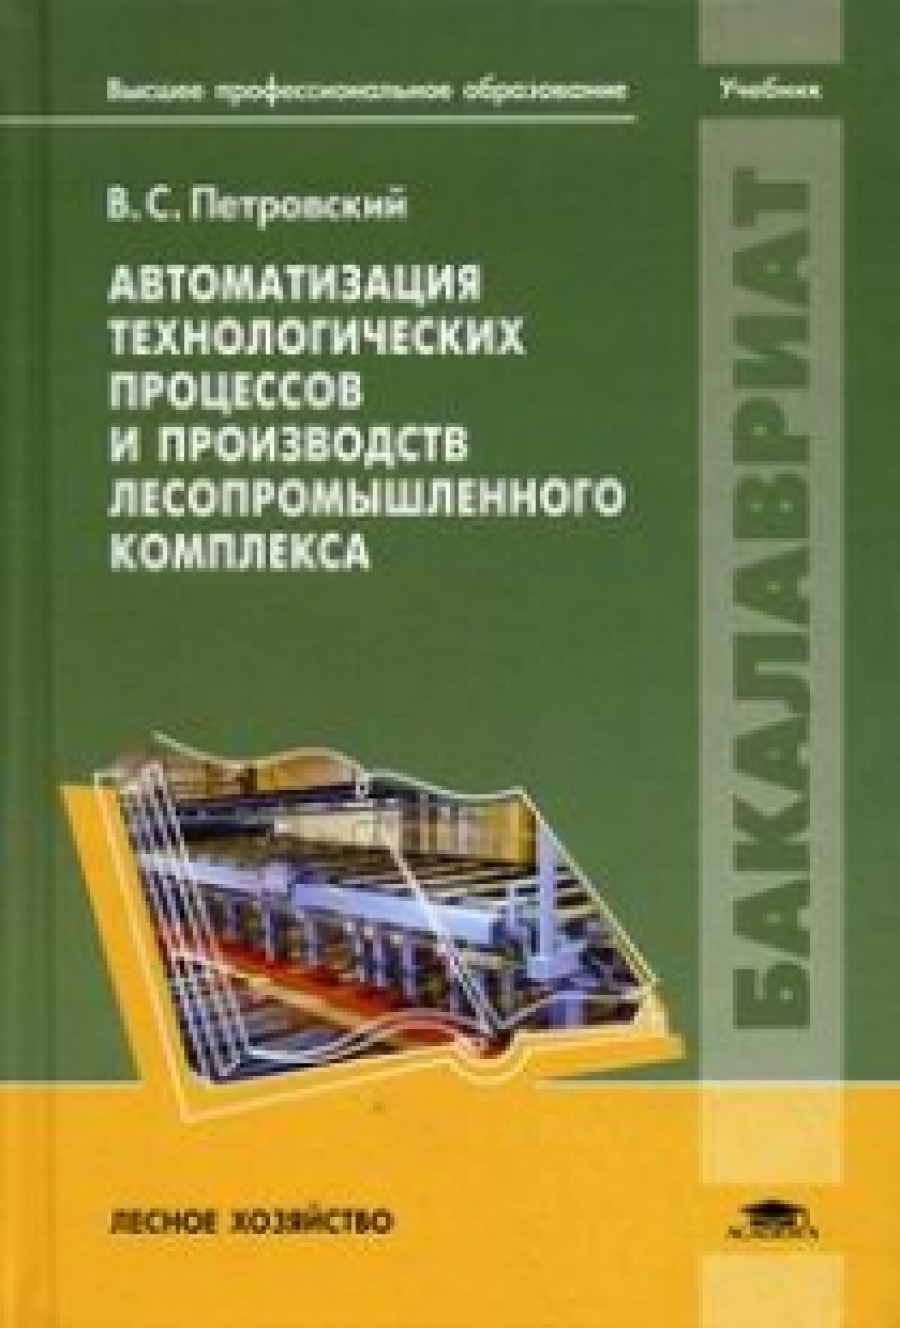 Петровский В.С. Автоматизация технологических процессов и производств лесопромышленного комплекса: Учебник 